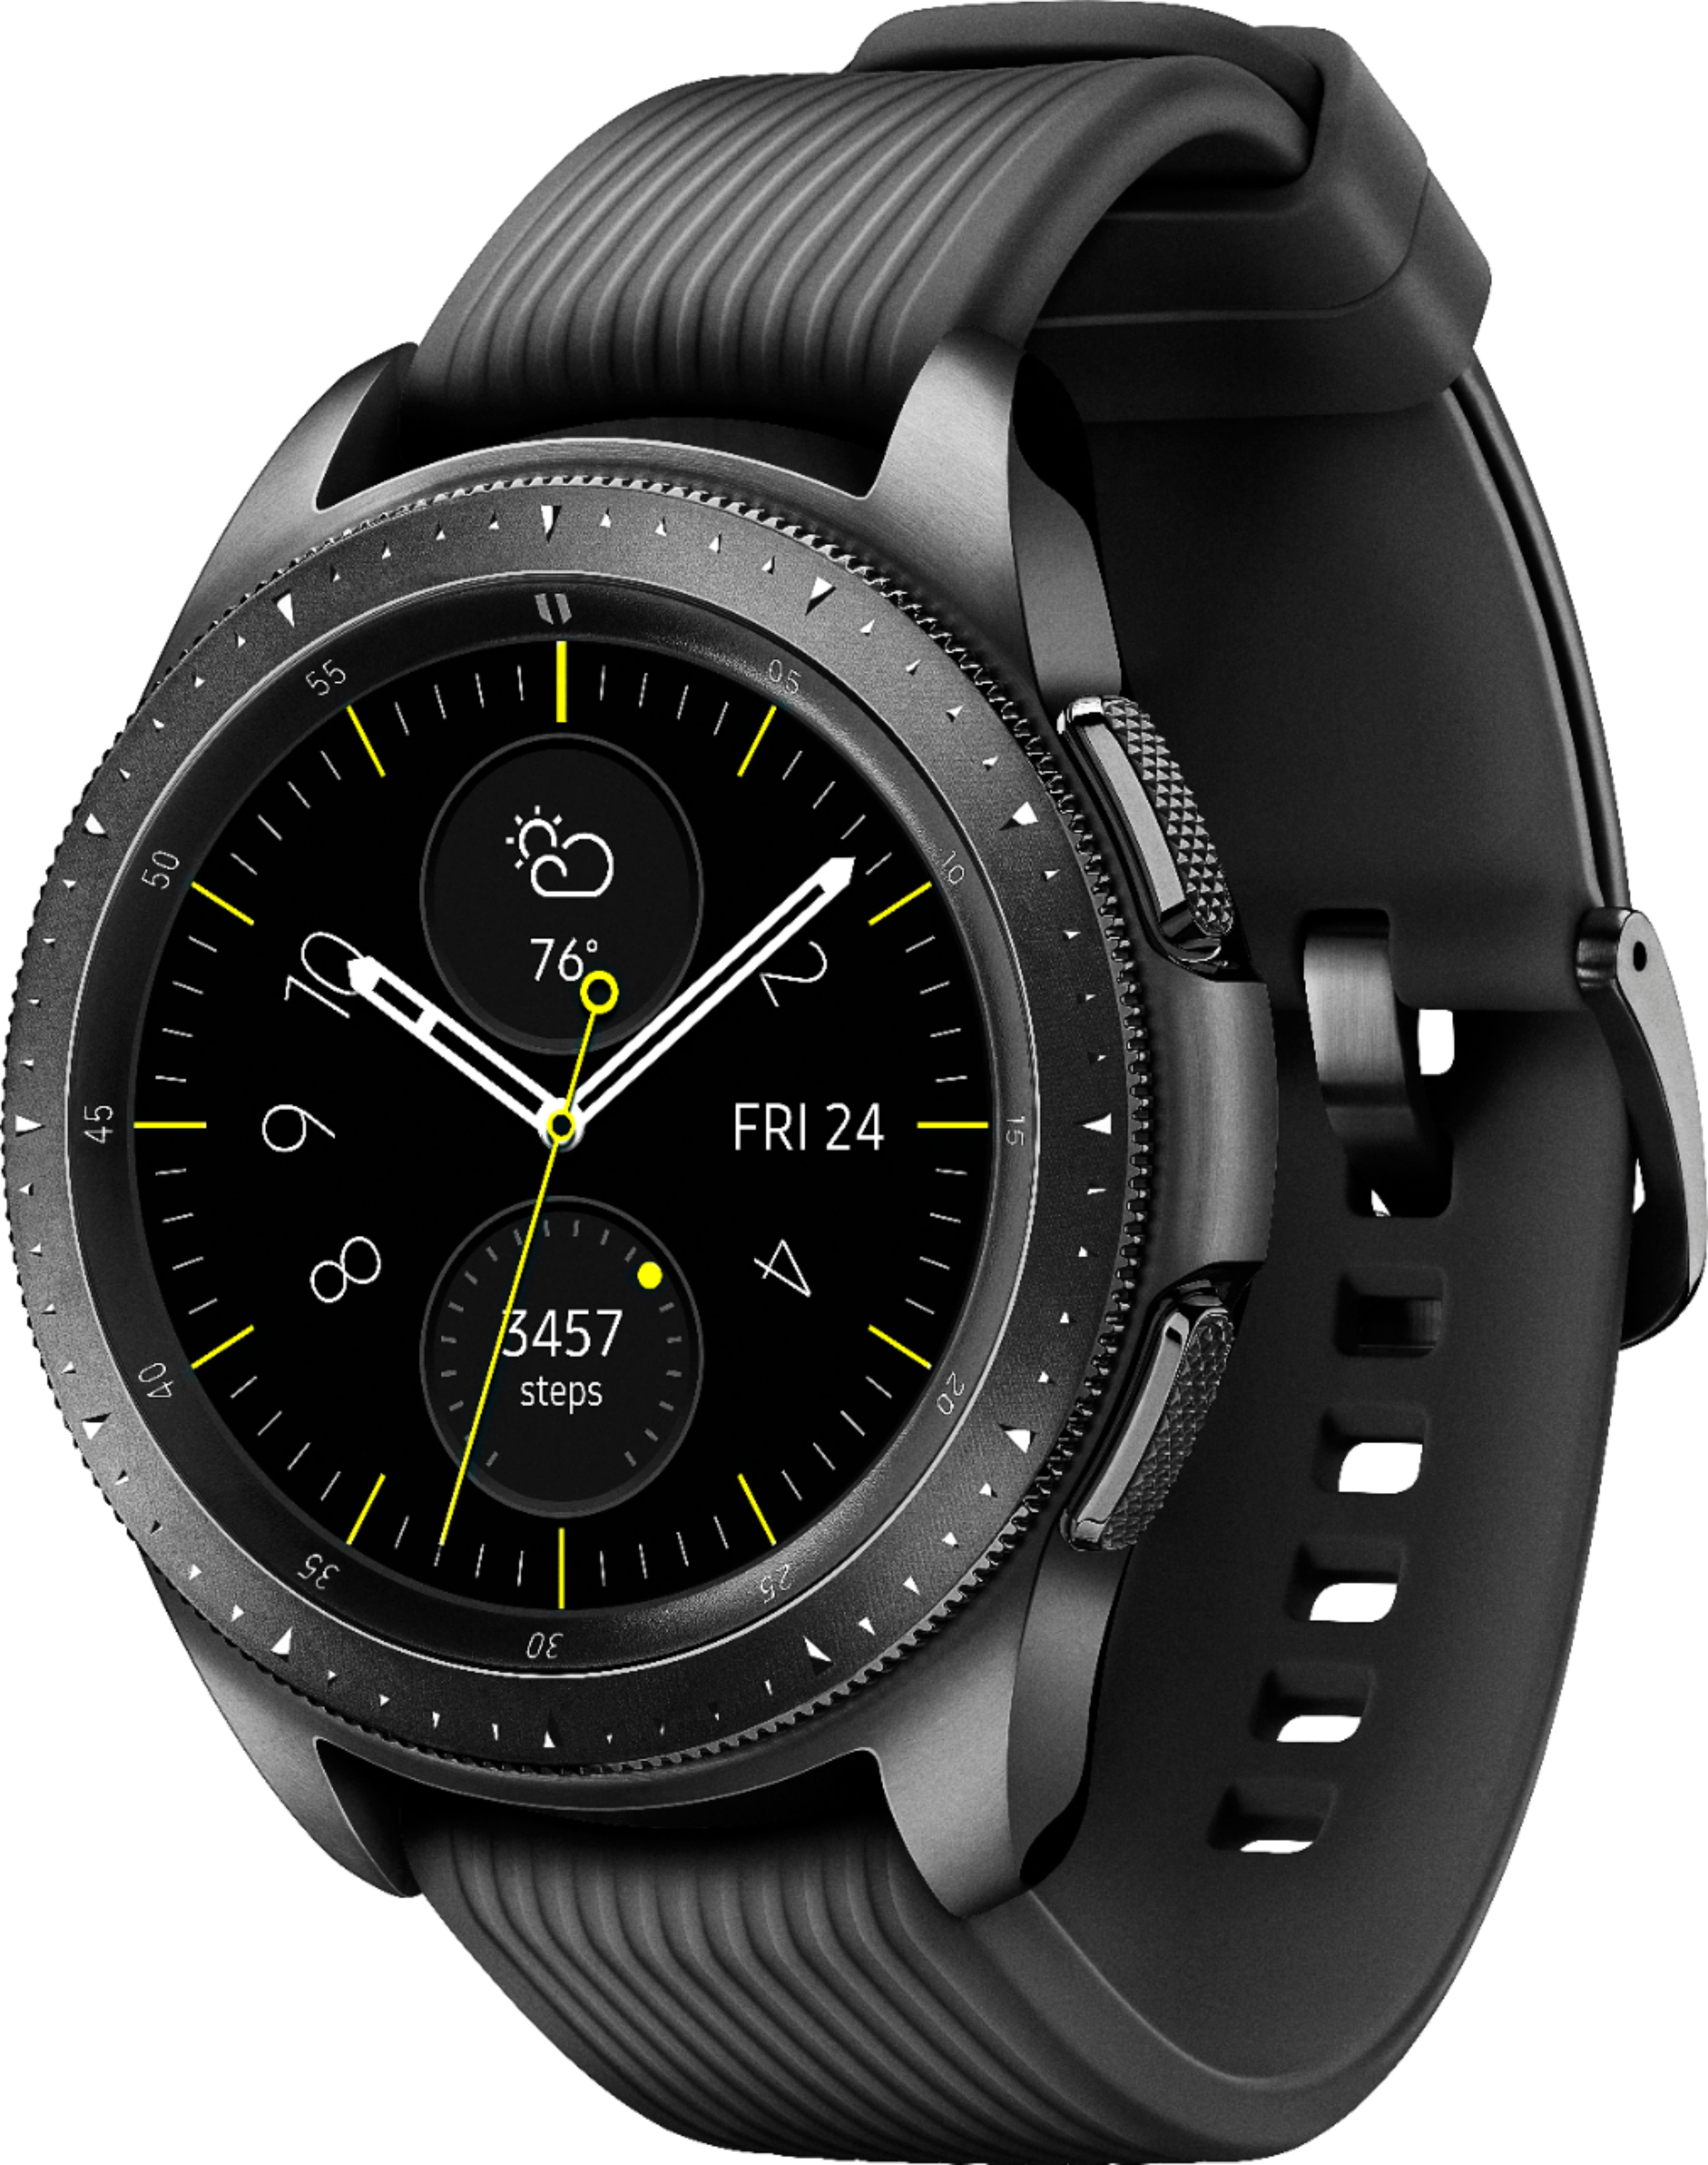 Best Buy: Samsung Galaxy Watch Smartwatch 42mm Stainless Steel